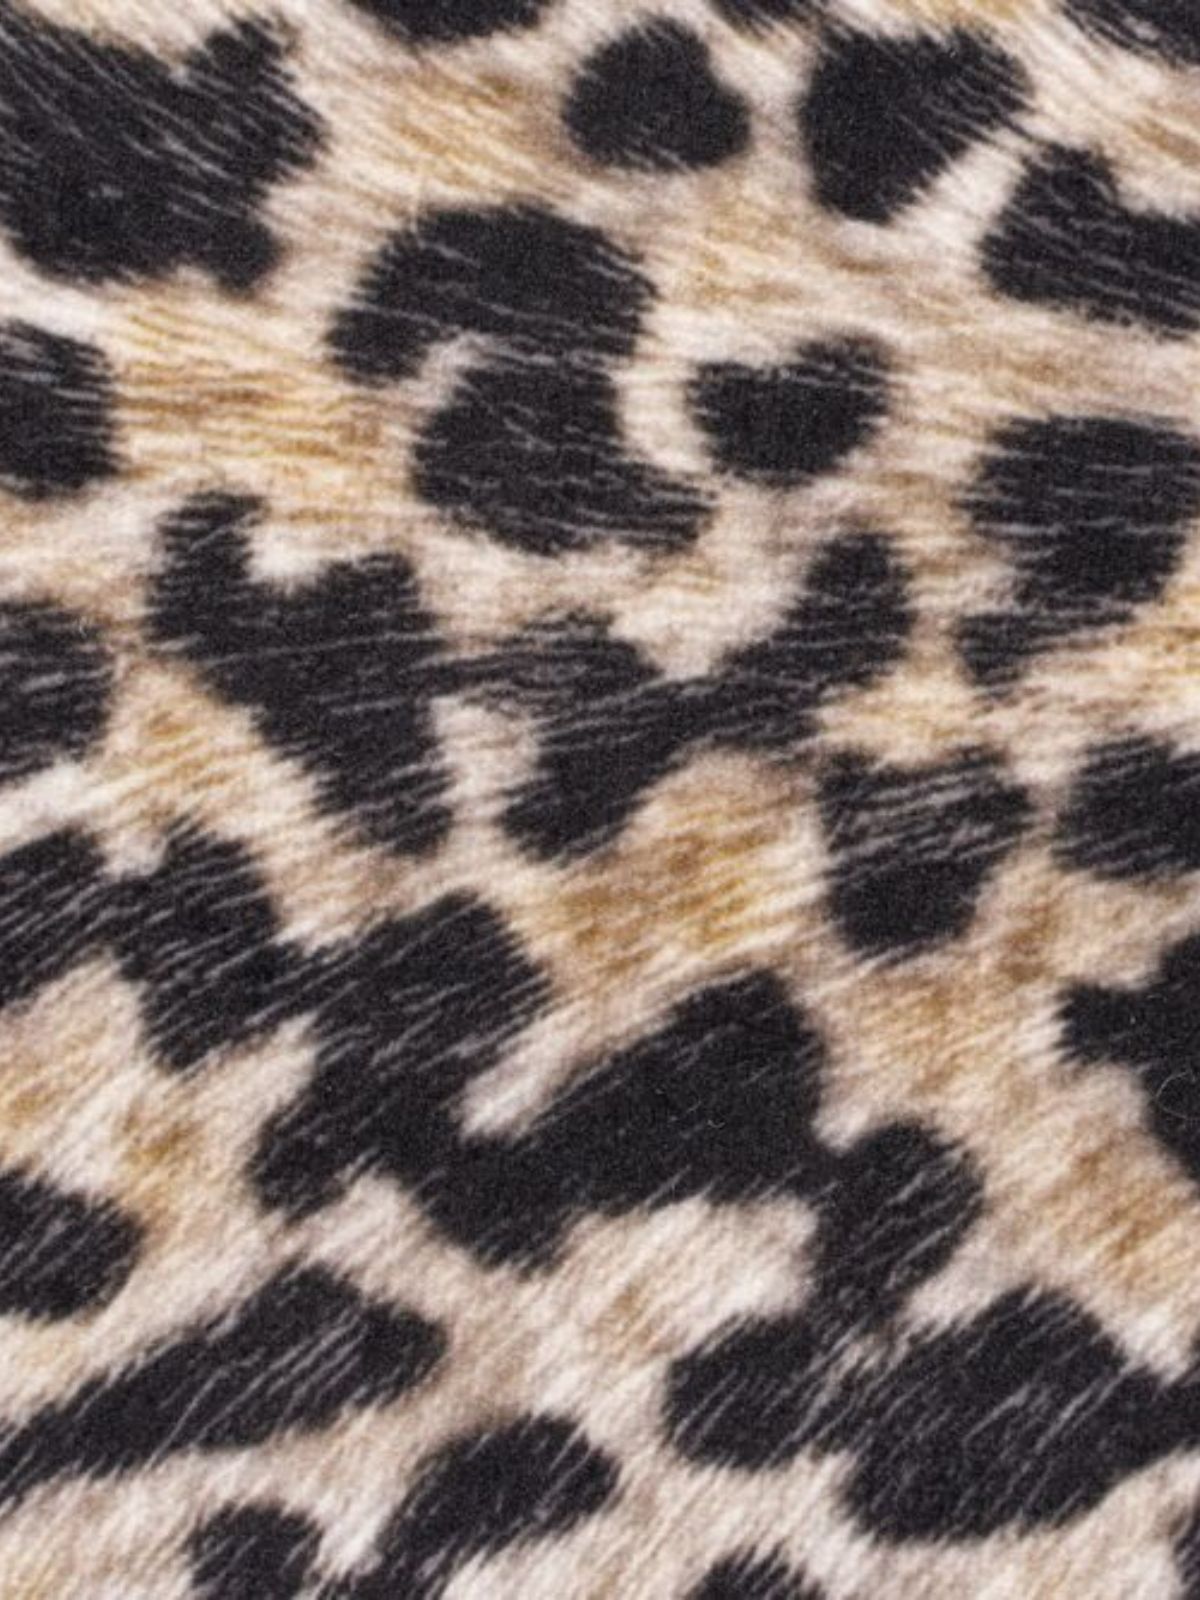 Tappeto animale Leopard Print in poliestere, multicolore 155x195 cm.-4